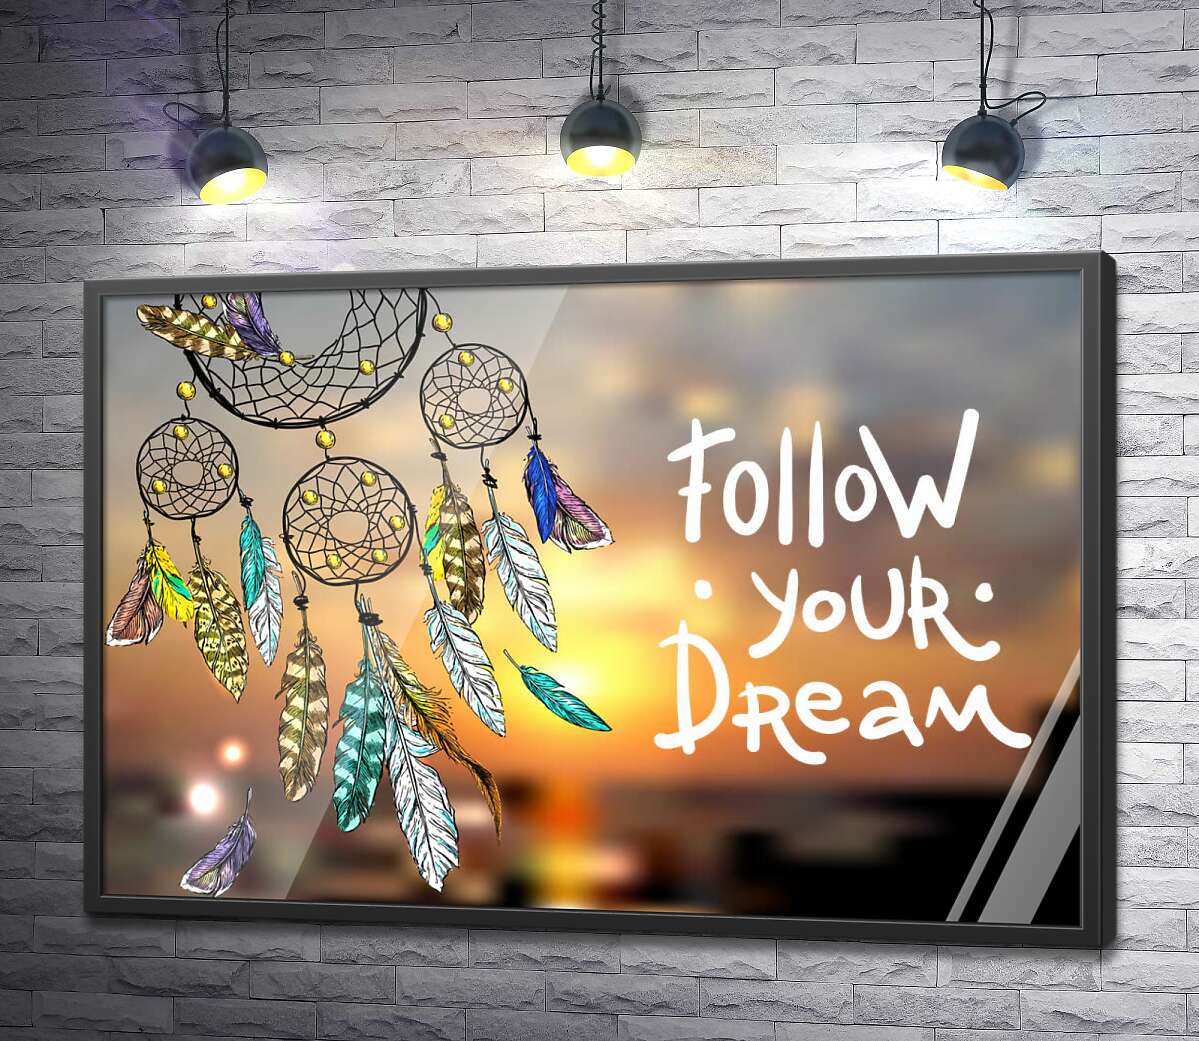 постер Индейский ловец снов рядом с фразой "follow your dream"